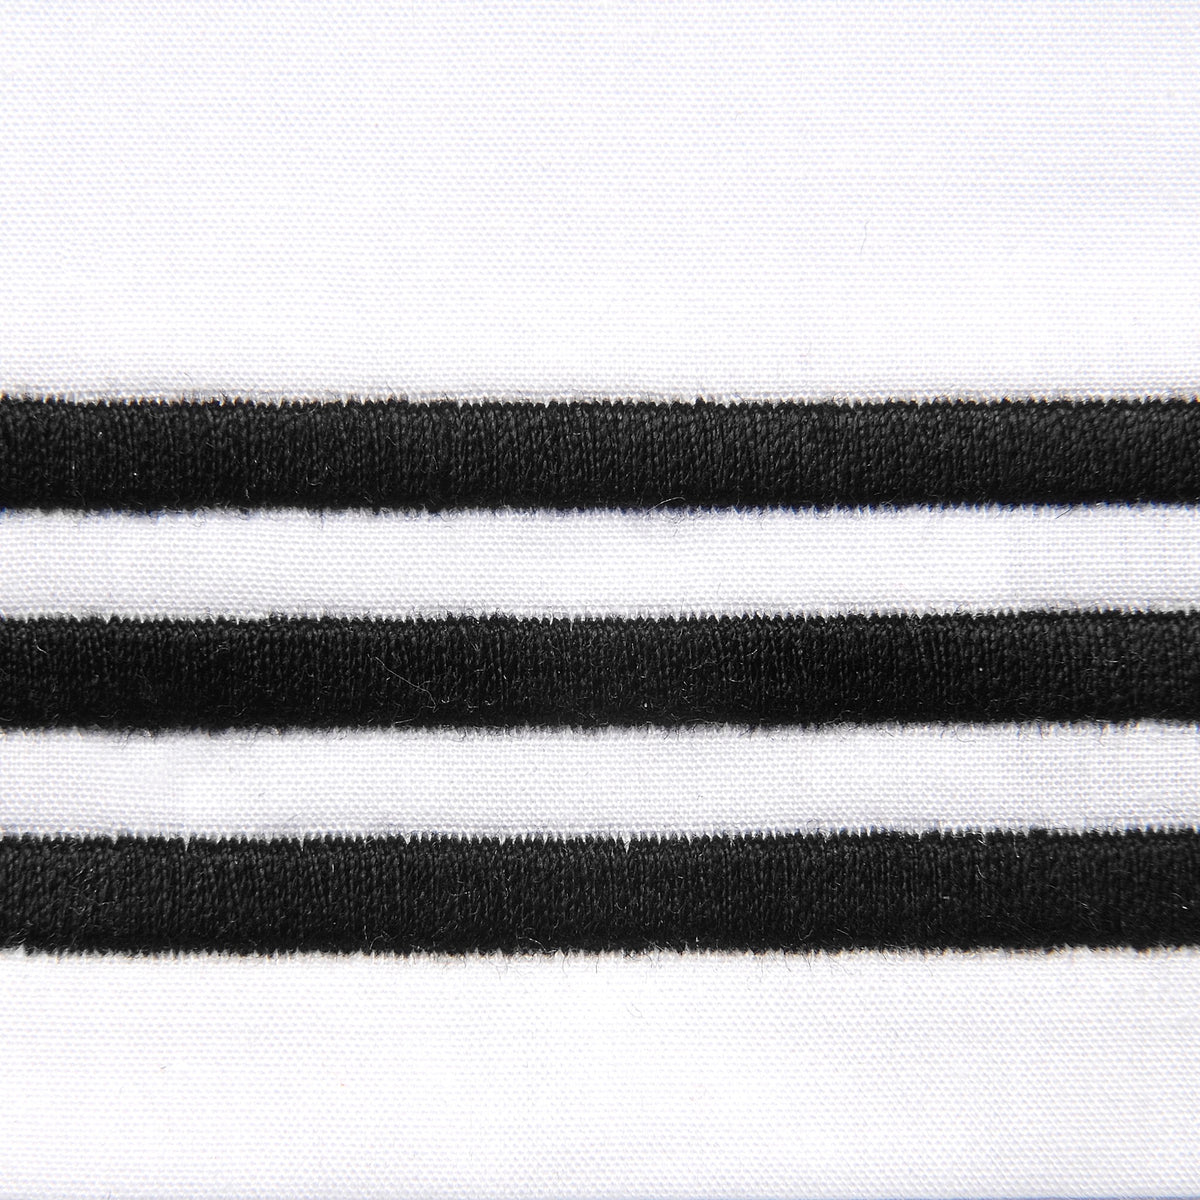 Fabric Closeup of Signoria Platinum Percale Bedding in White/Black Color